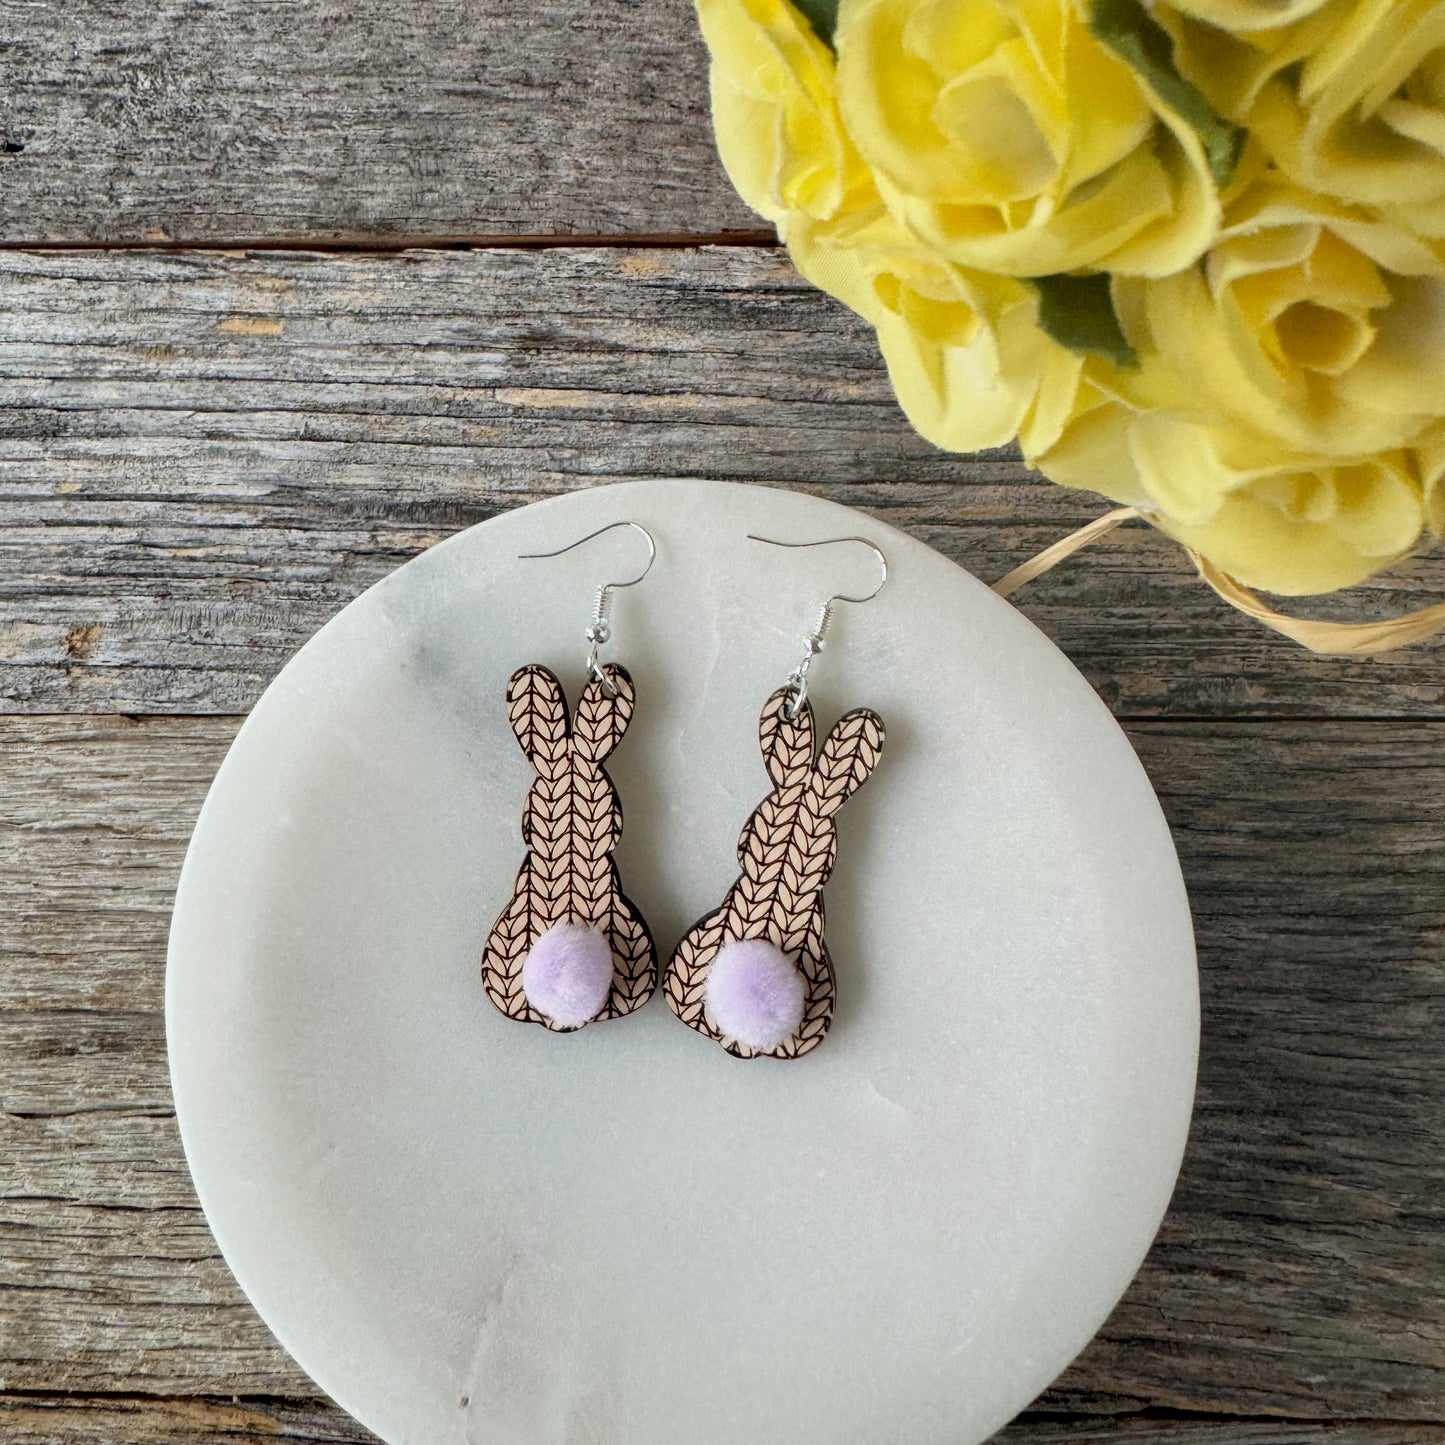 Adorable laser cut sweater Bunny earrings, cute laser engraved rabbit earrings